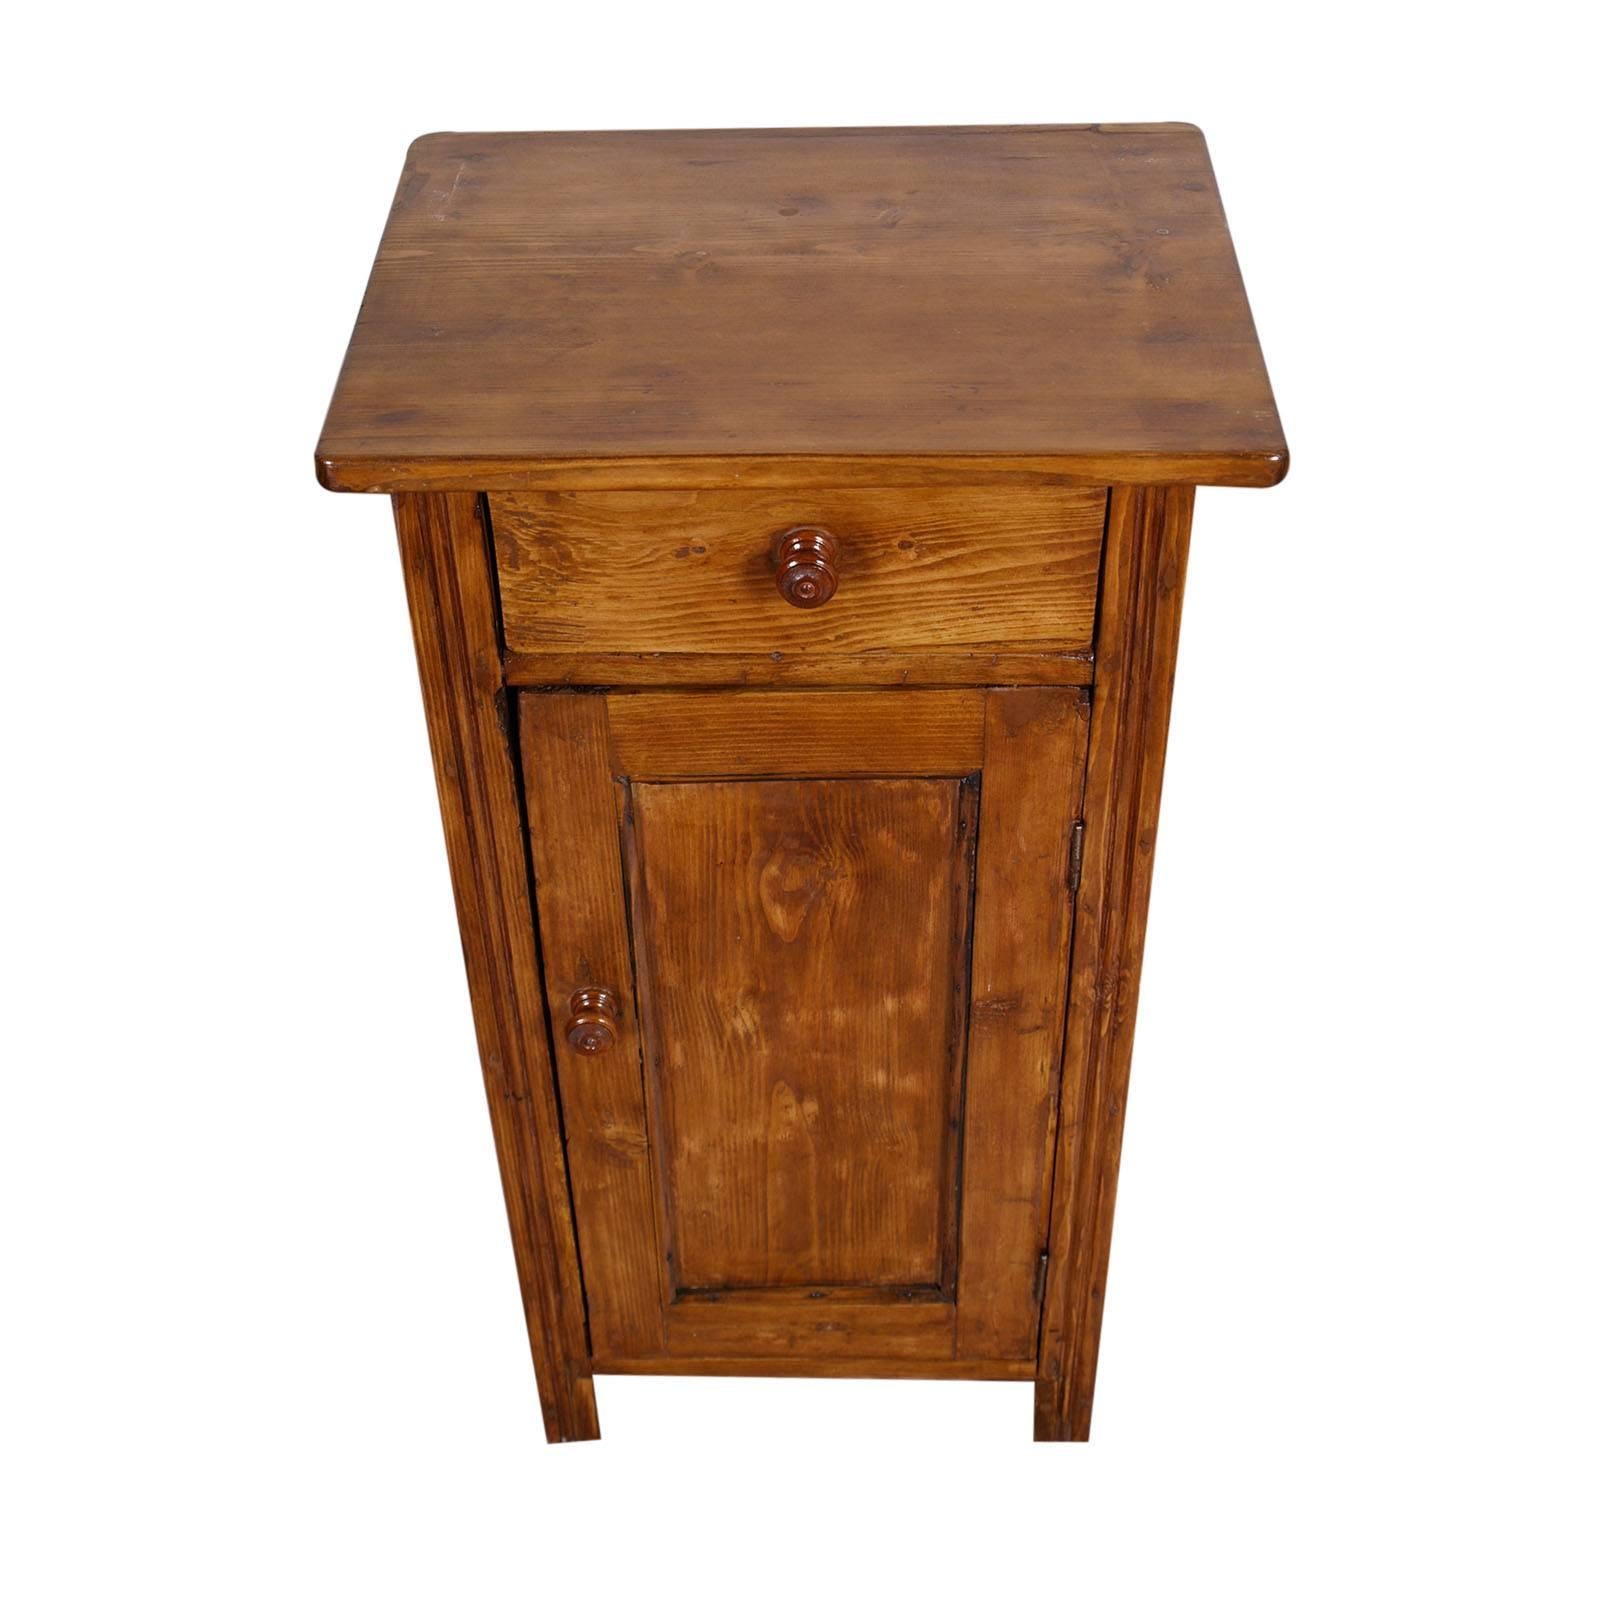 Rustikaler Tiroler Nachttisch aus dem späten 19. Jahrhundert, aus Lärchenholz, restauriert und gewachst
Gute Bedingungen

Maße cm: H 83, B 43, T 34.
  